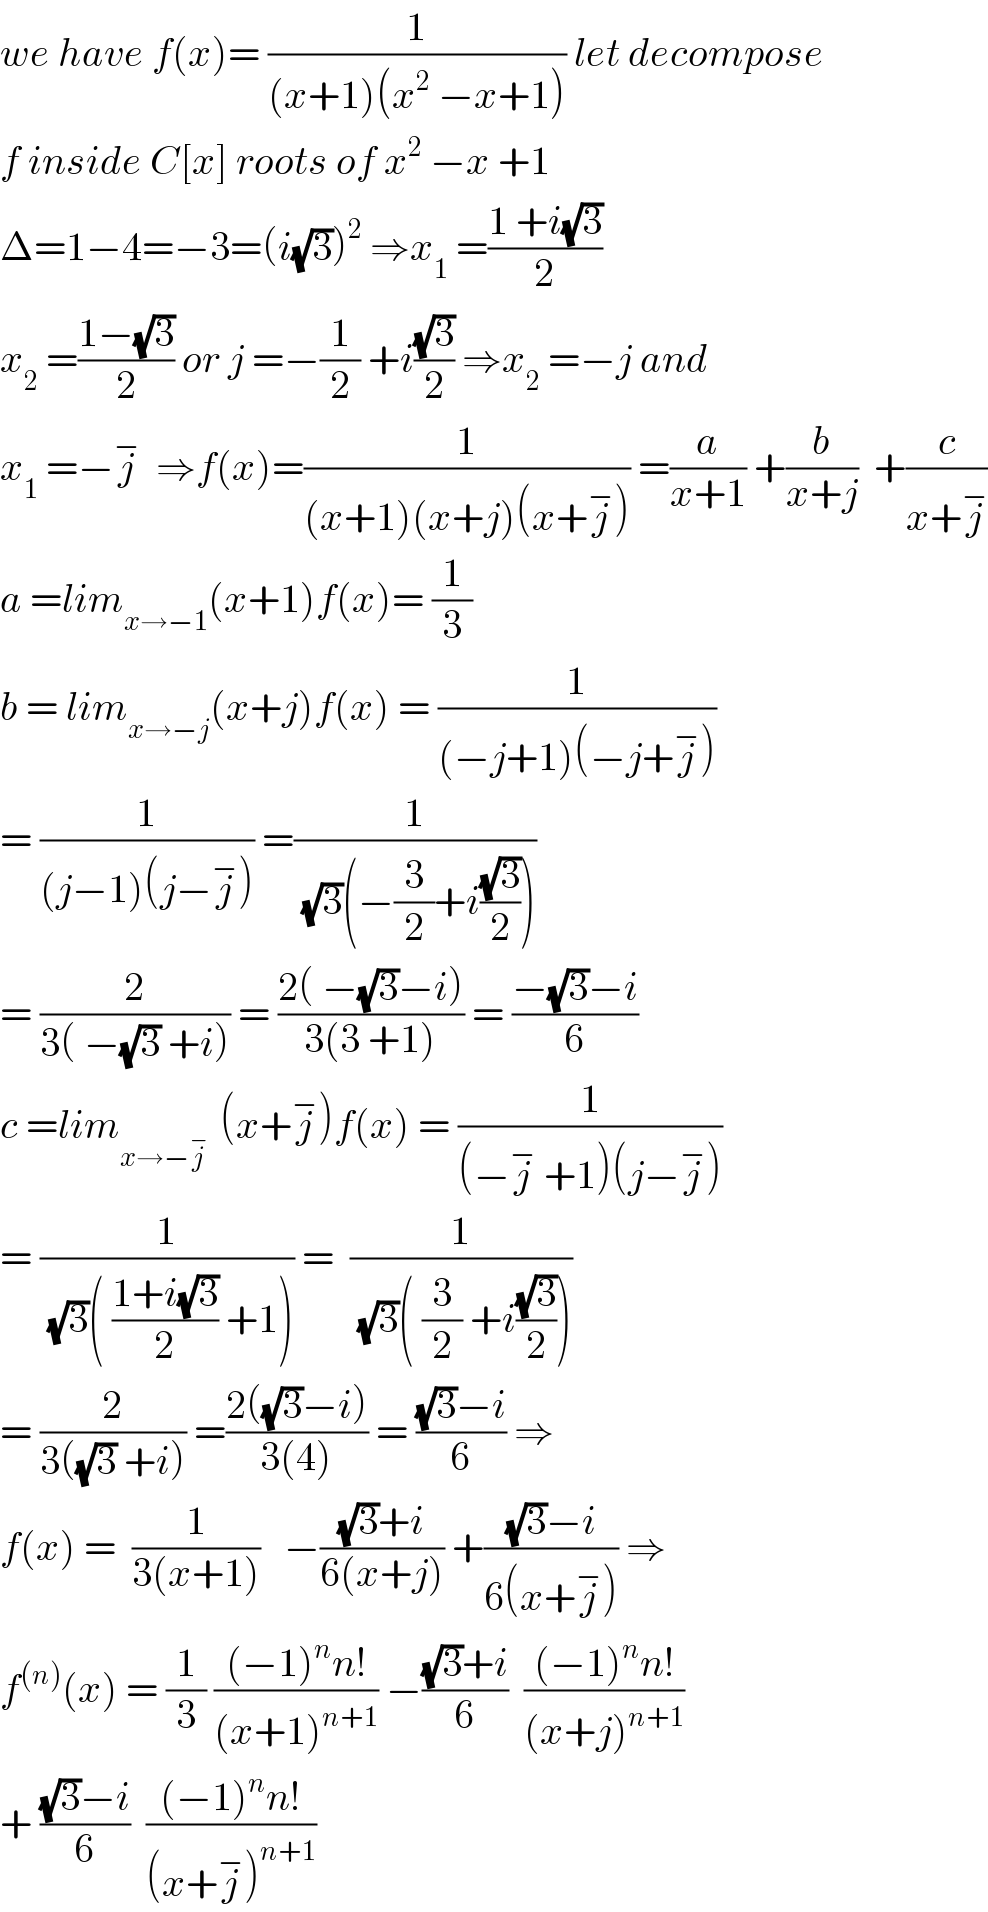 we have f(x)= (1/((x+1)(x^2  −x+1))) let decompose  f inside C[x] roots of x^2  −x +1  Δ=1−4=−3=(i(√3))^2  ⇒x_1  =((1 +i(√3))/2)  x_2  =((1−(√3))/2) or j =−(1/2) +i((√3)/2) ⇒x_2  =−j and  x_1  =−j^−   ⇒f(x)=(1/((x+1)(x+j)(x+j^− ))) =(a/(x+1)) +(b/(x+j))  +(c/(x+j^− ))  a =lim_(x→−1) (x+1)f(x)= (1/3)  b = lim_(x→−j) (x+j)f(x) = (1/((−j+1)(−j+j^− )))  = (1/((j−1)(j−j^− ))) =(1/((√3)(−(3/2)+i((√3)/2))))   = (2/(3( −(√3) +i))) = ((2( −(√3)−i))/(3(3 +1))) = ((−(√3)−i)/6)  c =lim_(x→−j^−  )  (x+j^− )f(x) = (1/((−j^−  +1)(j−j^− )))  = (1/((√3)( ((1+i(√3))/2) +1))) =  (1/((√3)( (3/2) +i((√3)/2))))  = (2/(3((√3) +i))) =((2((√3)−i))/(3(4))) = (((√3)−i)/6) ⇒  f(x) =  (1/(3(x+1)))   −(((√3)+i)/(6(x+j))) +(((√3)−i)/(6(x+j^− ))) ⇒  f^((n)) (x) = (1/3) (((−1)^n n!)/((x+1)^(n+1) )) −(((√3)+i)/6)  (((−1)^n n!)/((x+j)^(n+1) ))  + (((√3)−i)/6)  (((−1)^n n!)/((x+j^− )^(n+1) ))  